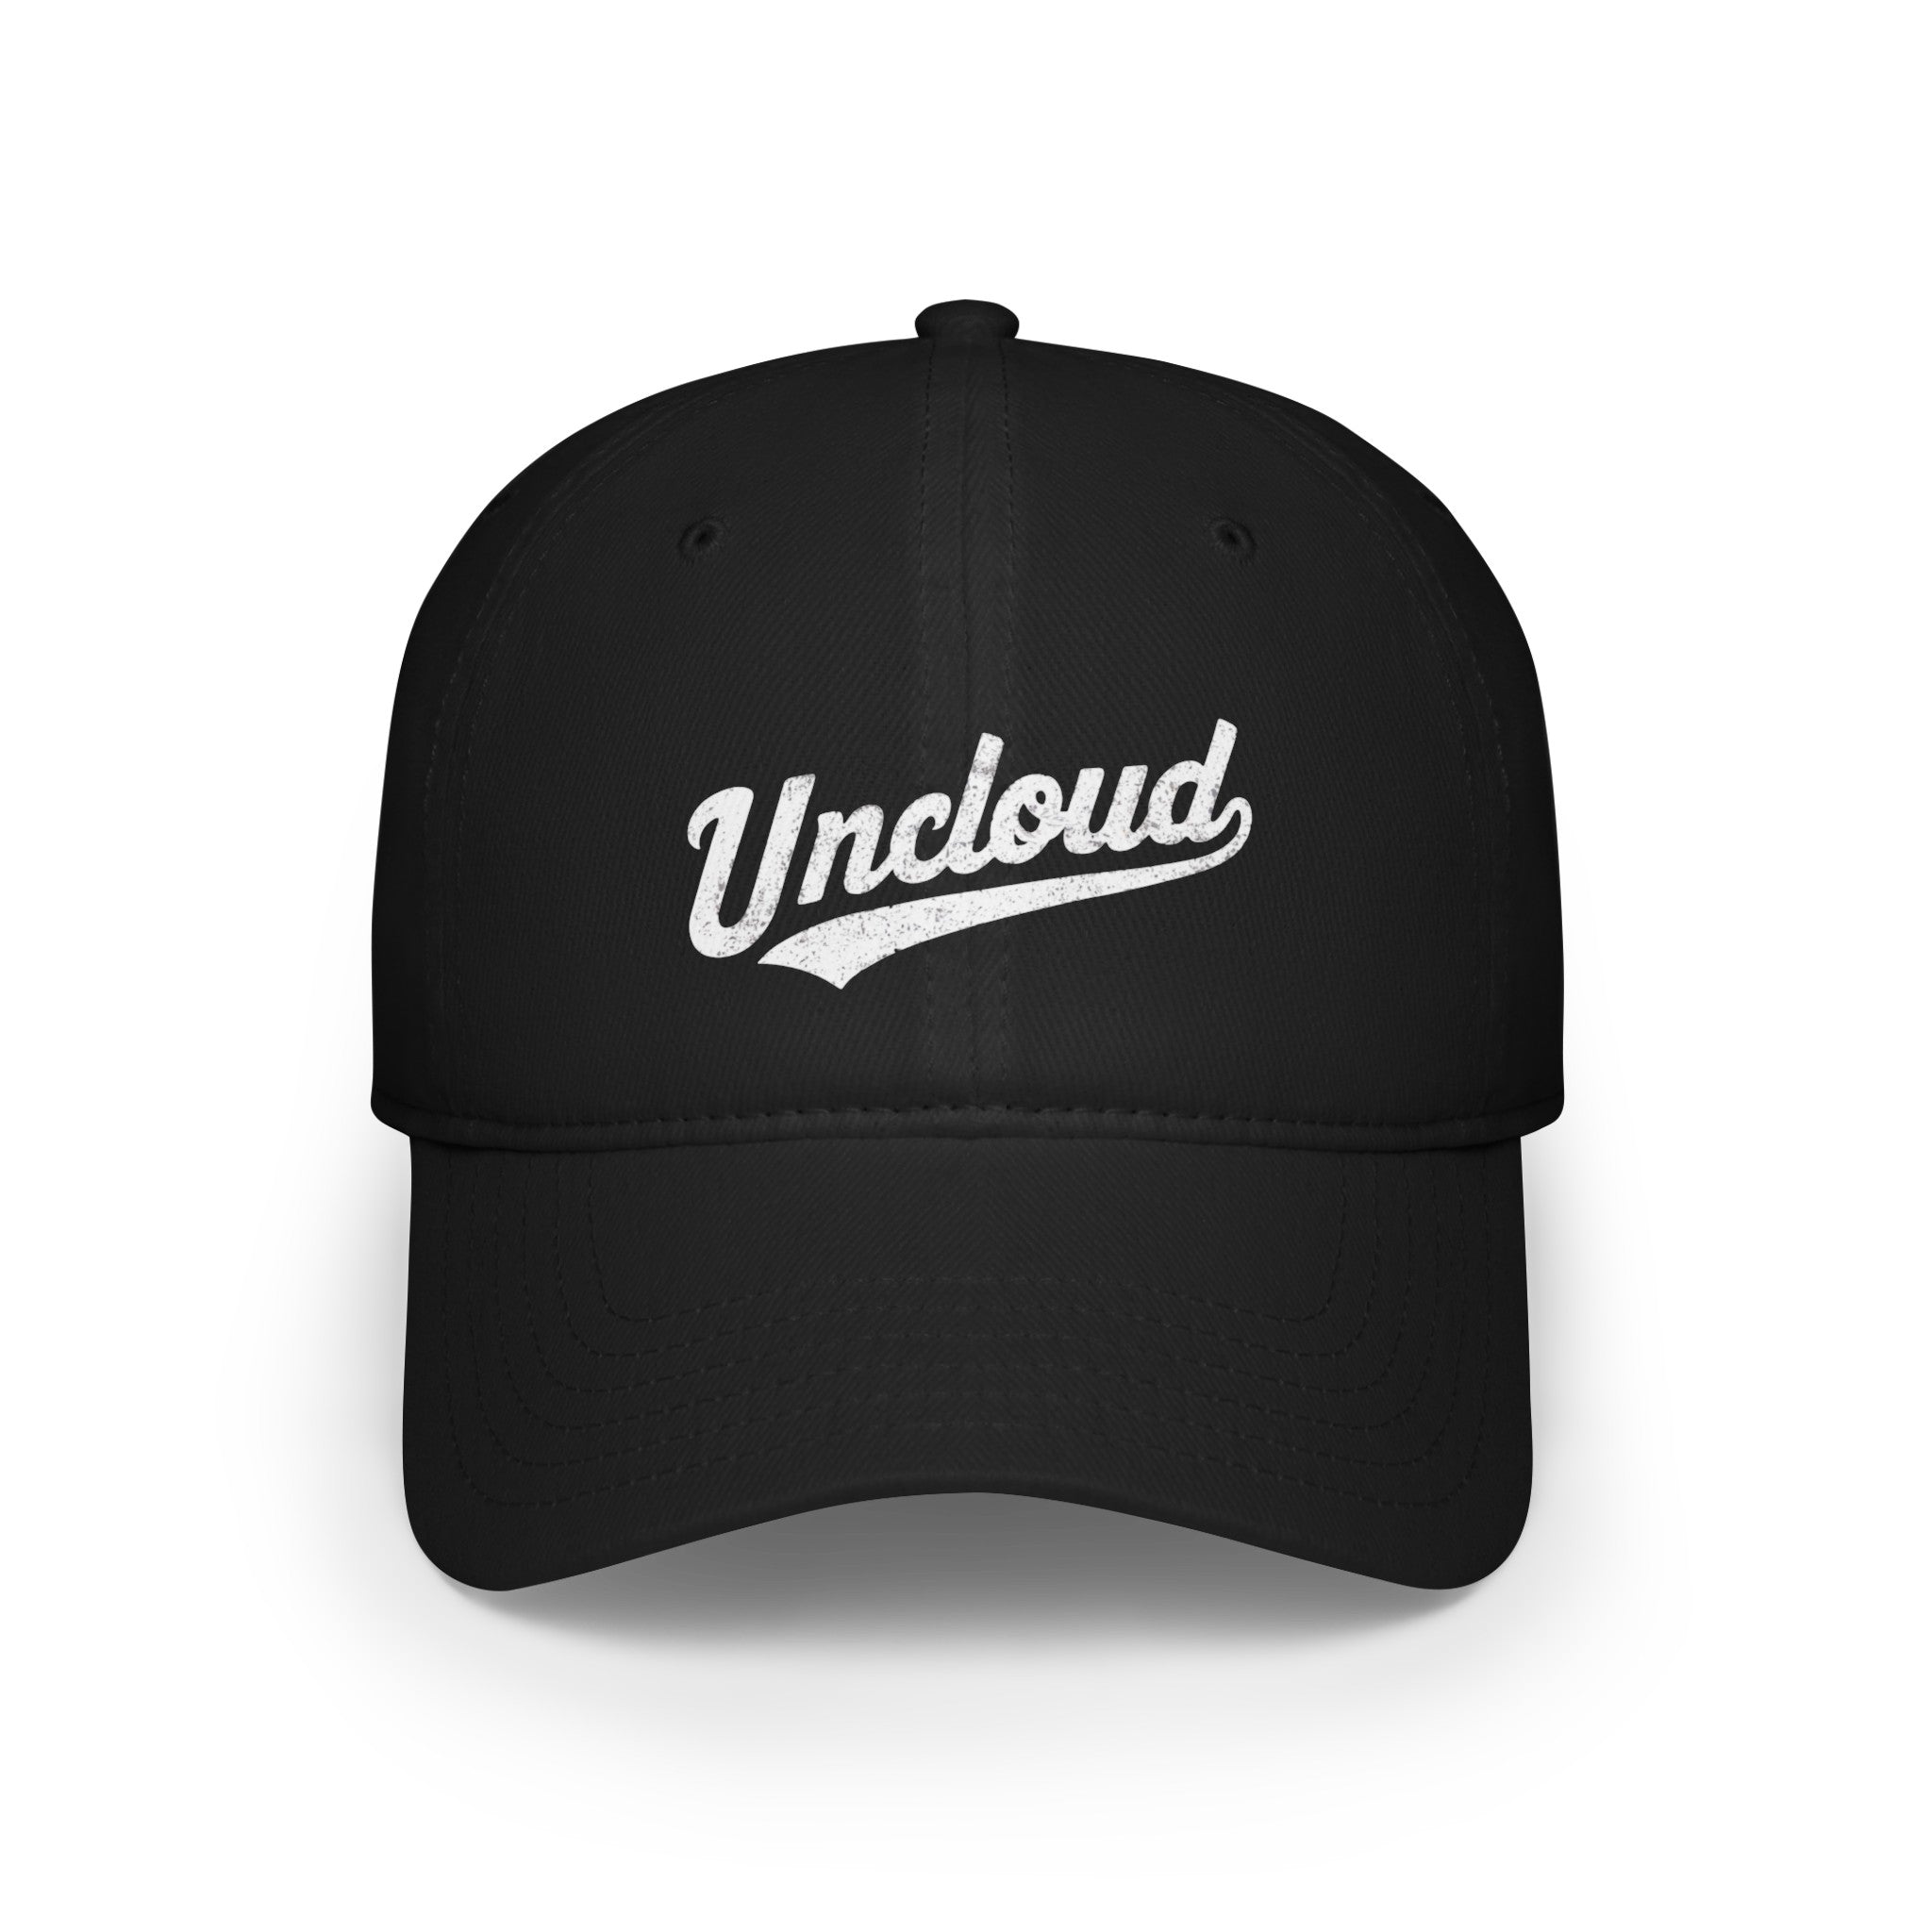 Uncloud - Hat